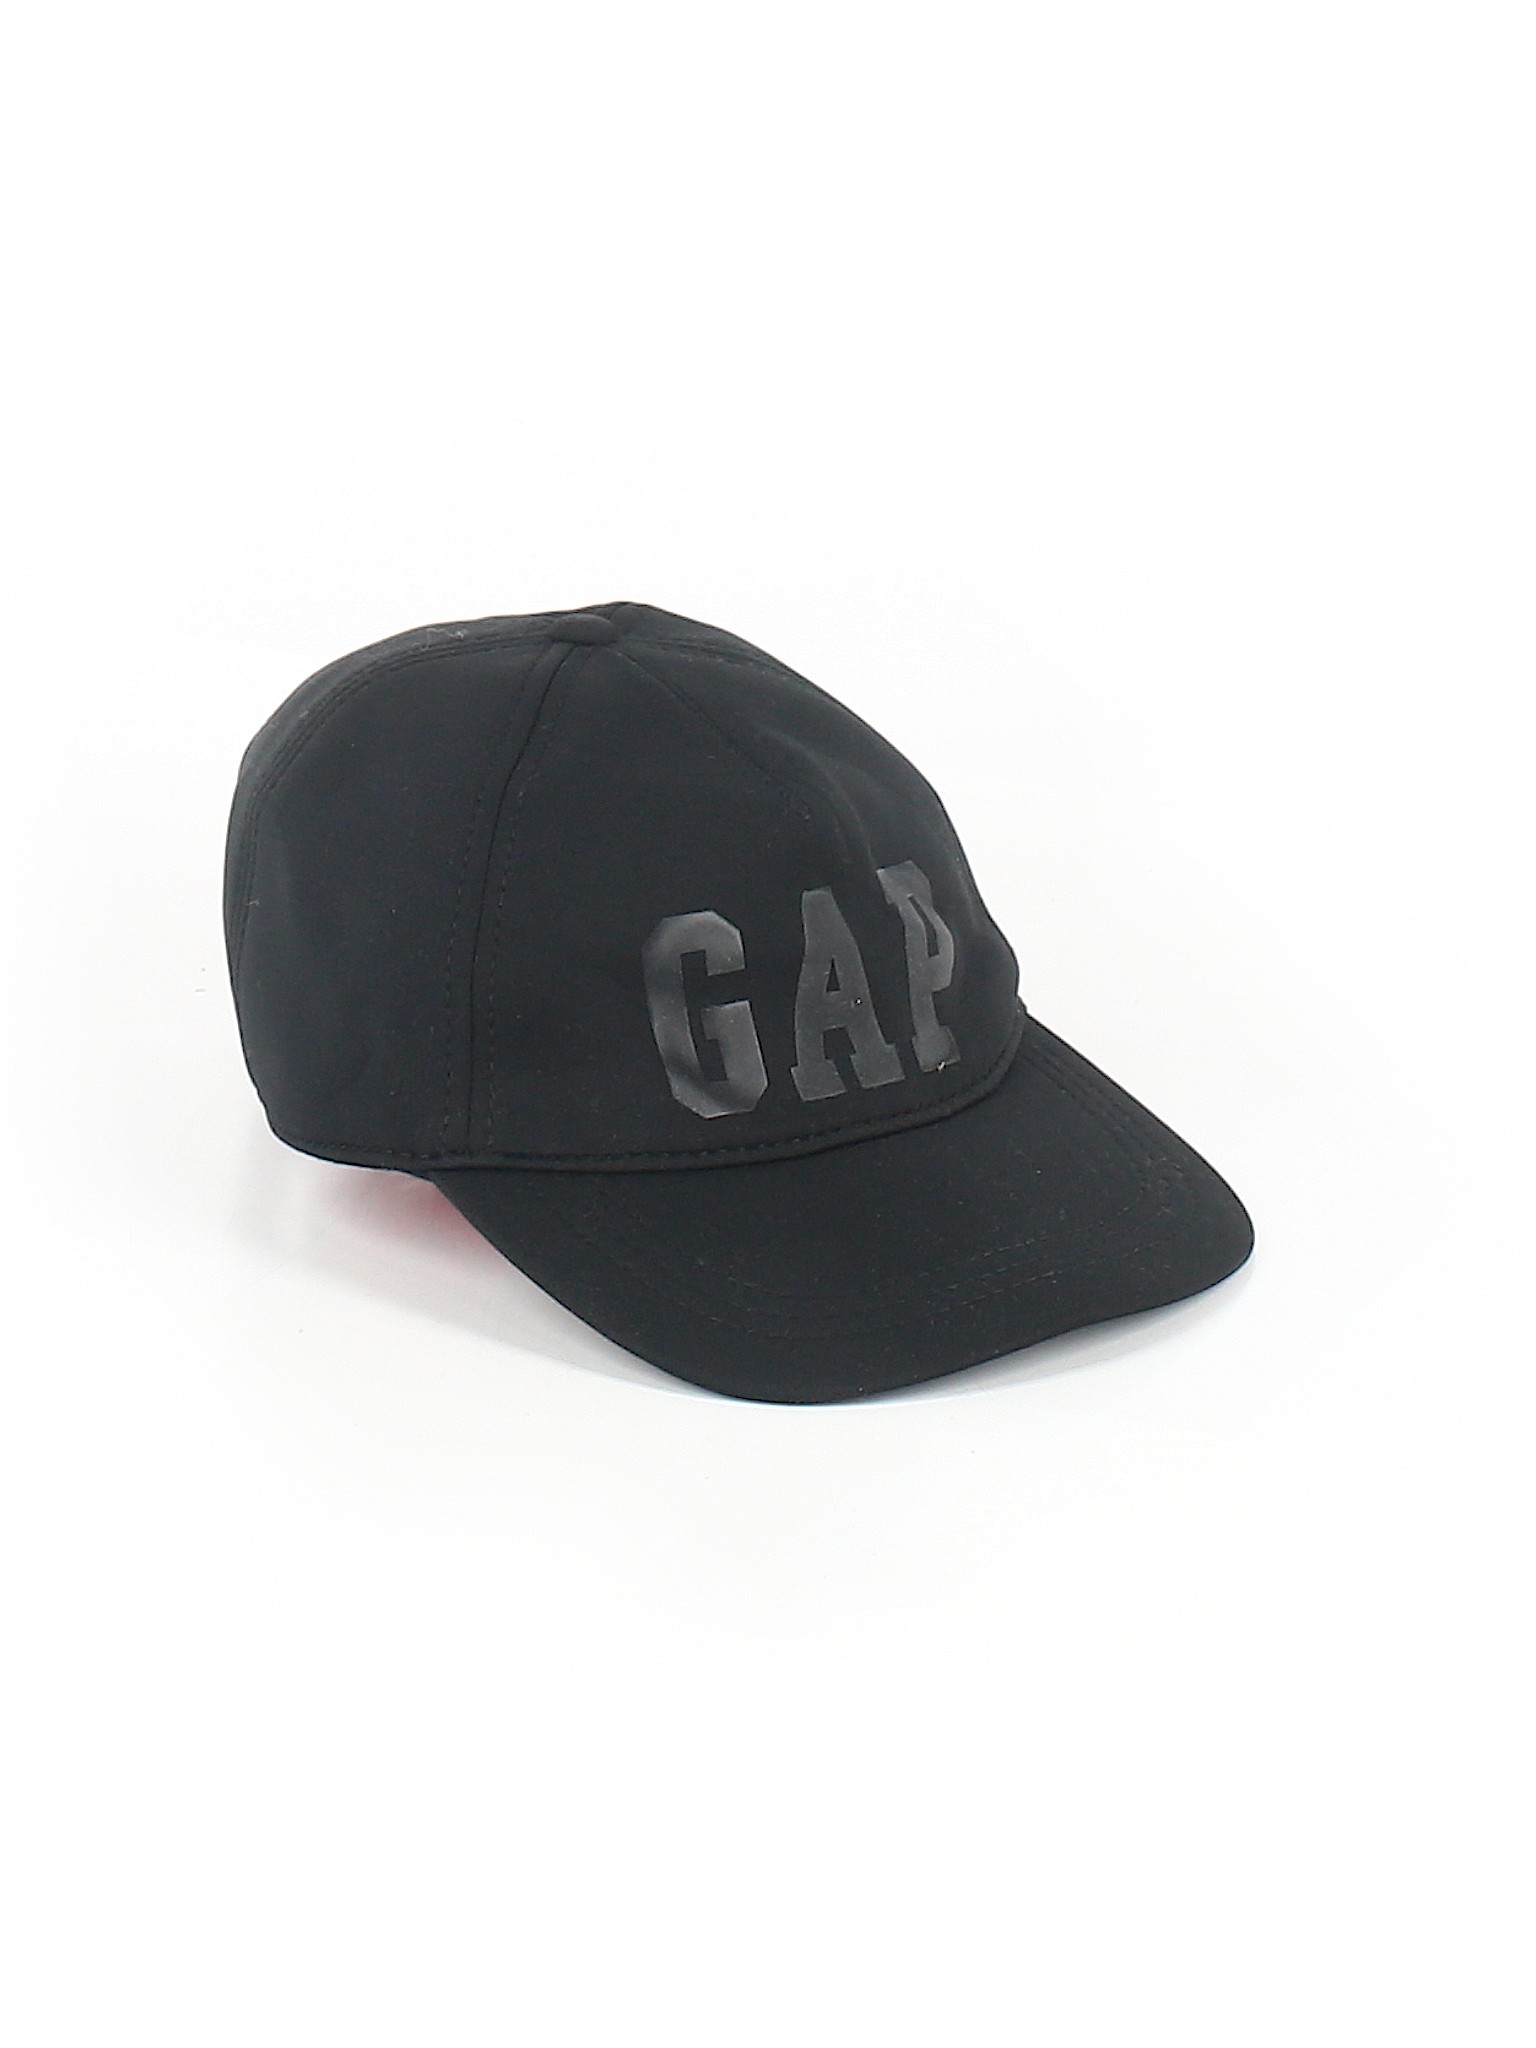 Gap Hat Size Chart